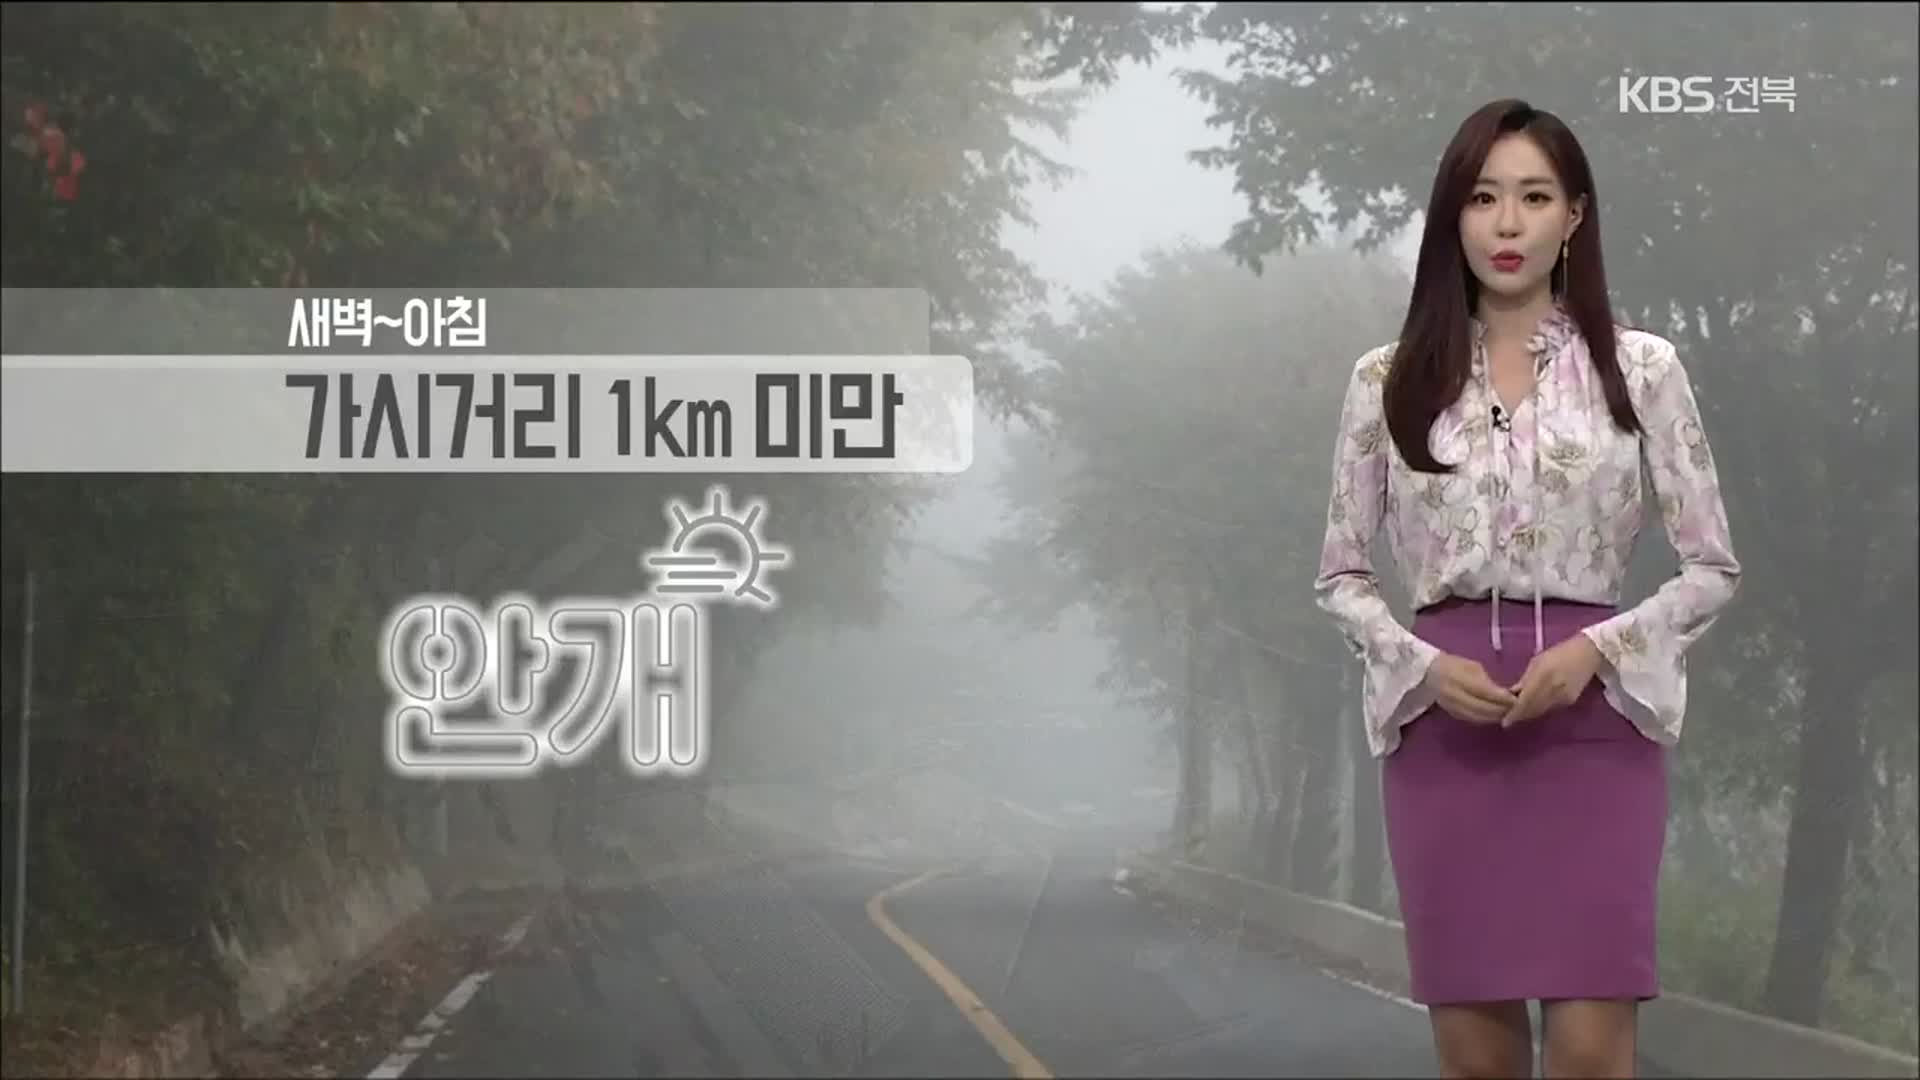 [날씨] 전북 새벽~아침 가시거리 1km 미만…안개 조심